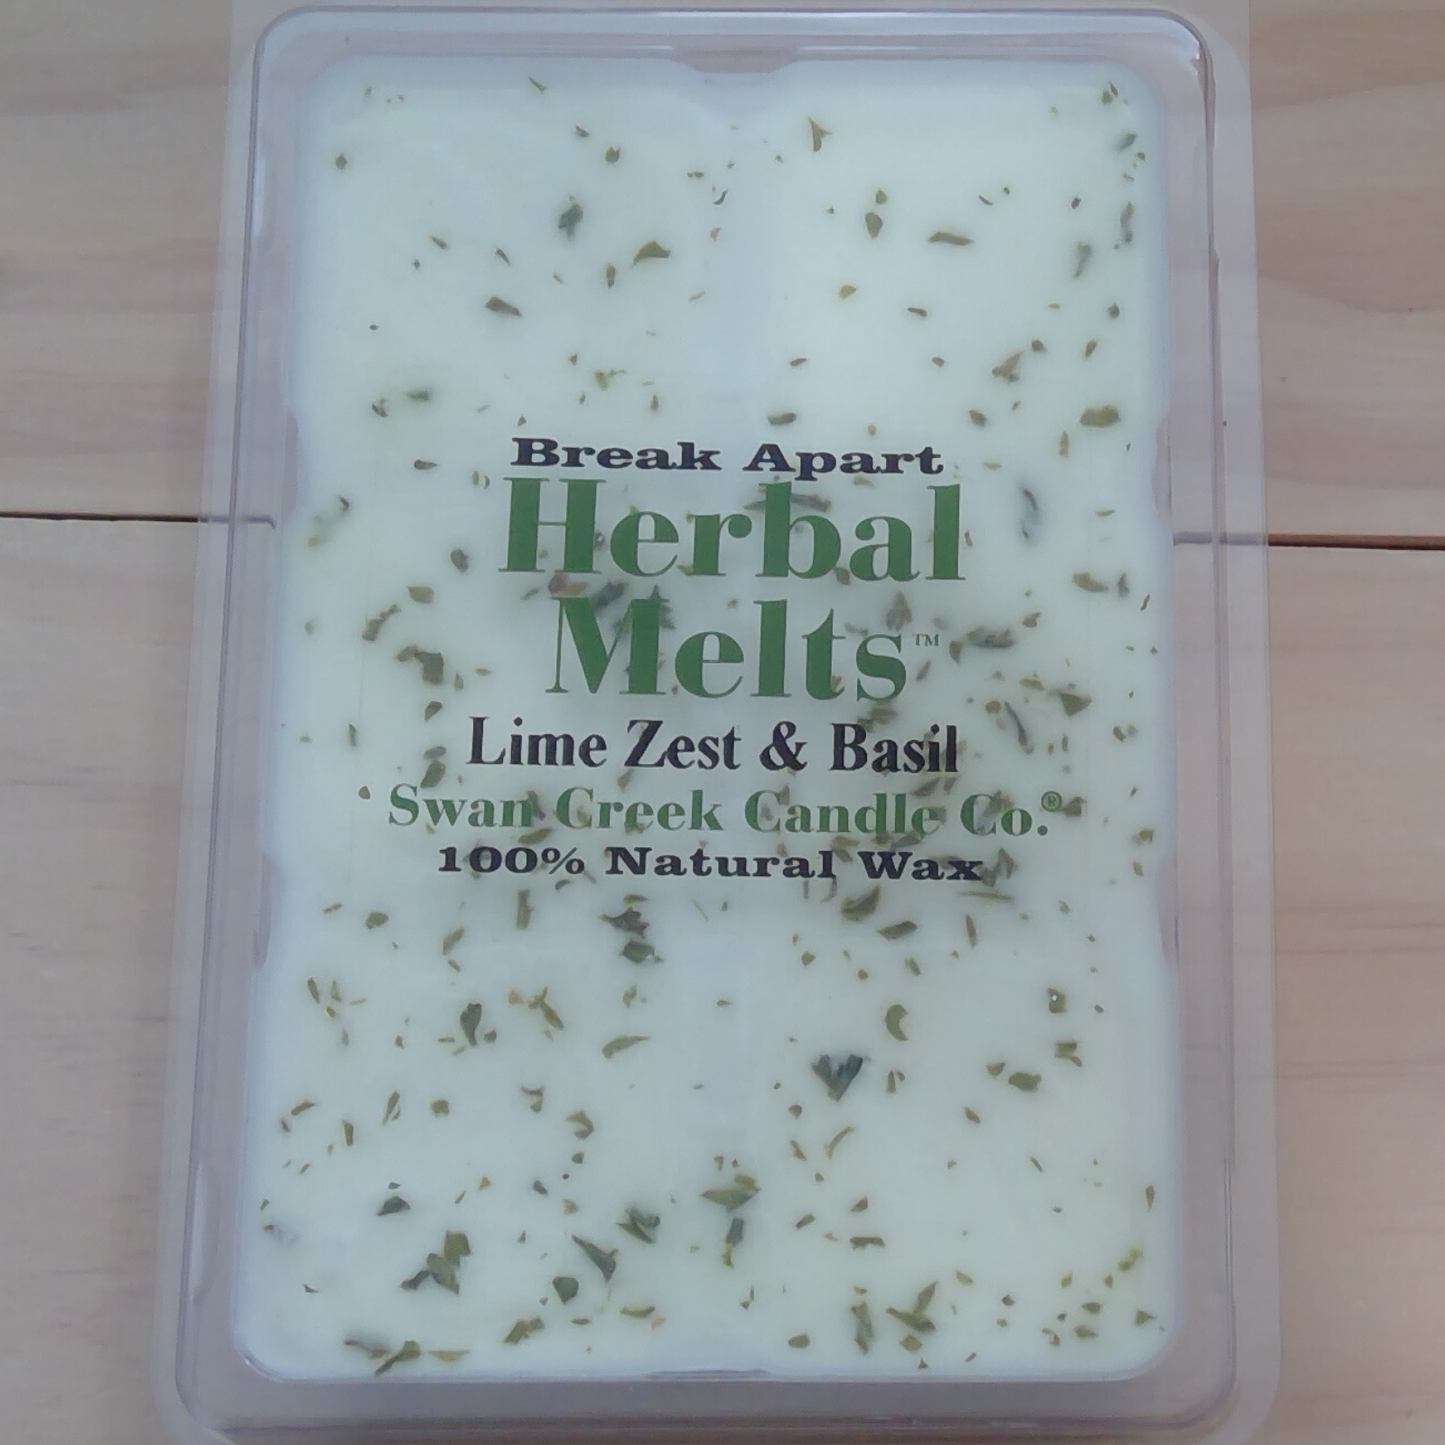 Lime Zest & Basil Herbal Melts